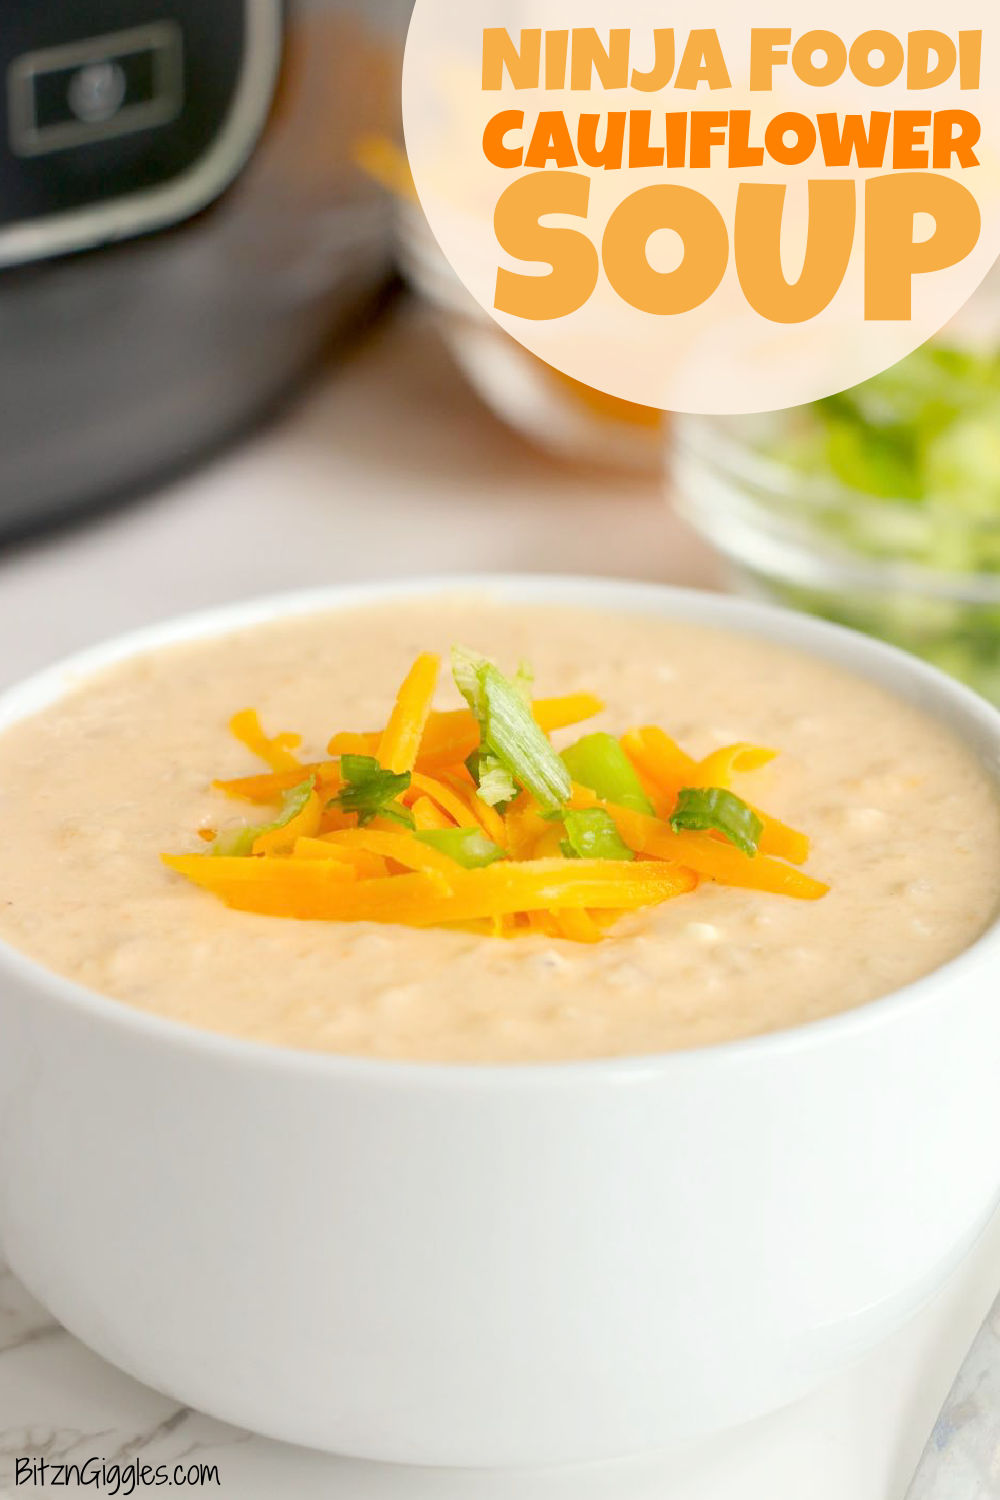 Ninja Foodi Cold & Hot Blender: superb soup at home